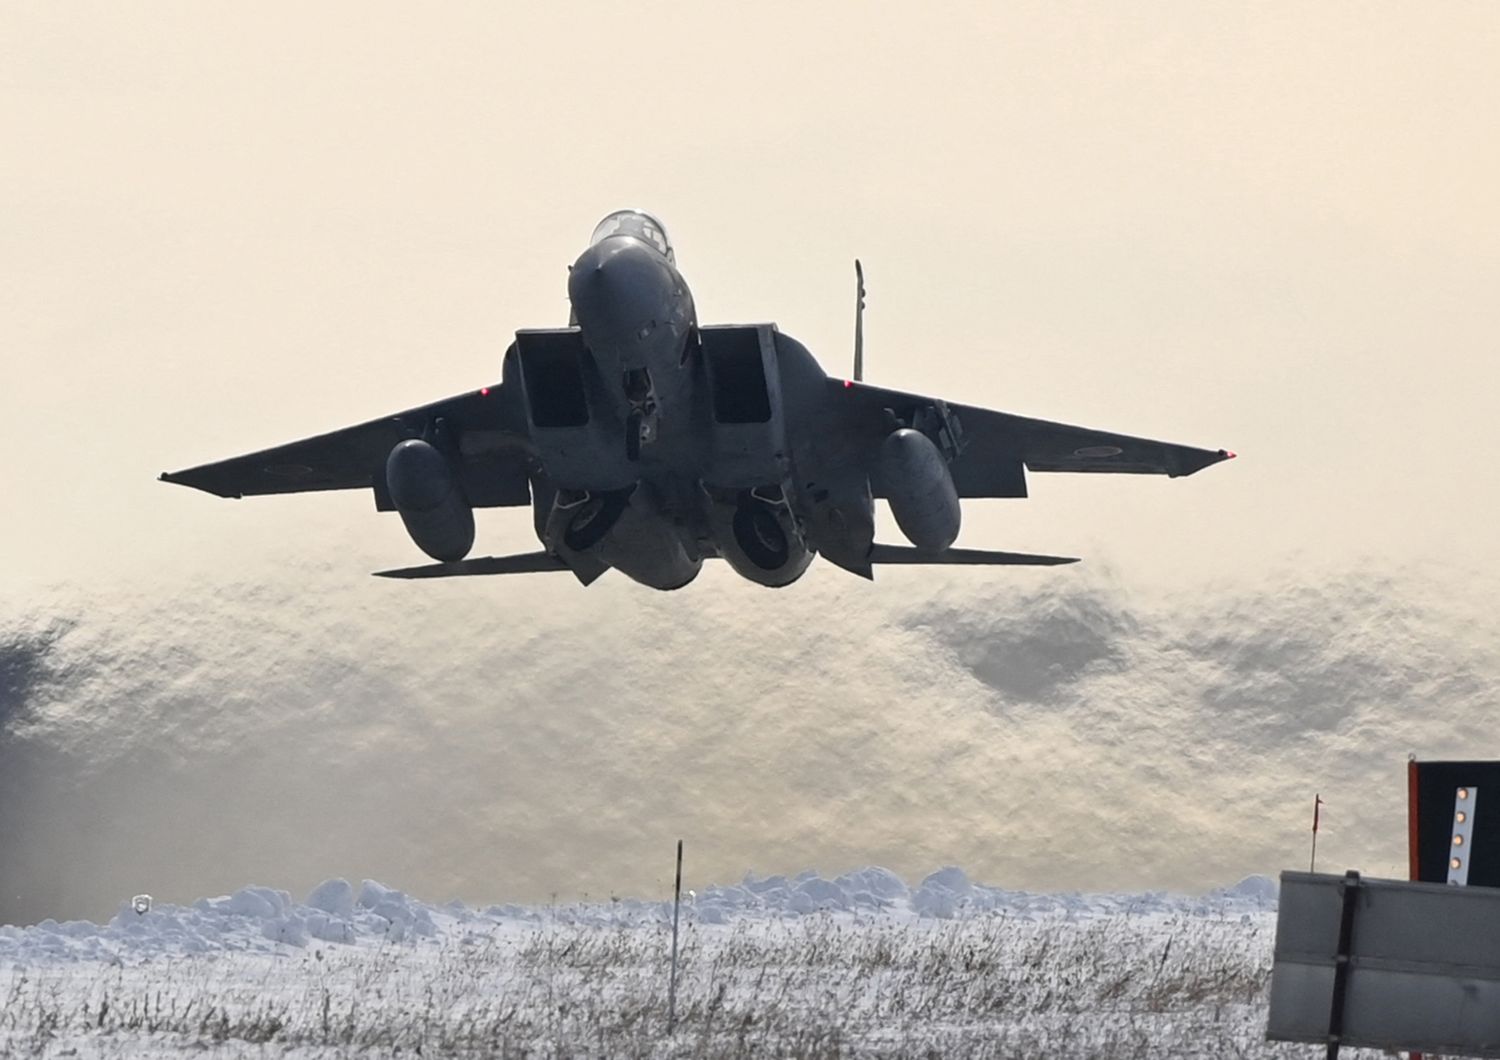 mosca ammassa aerei confint ucraina timori nuovi offensive